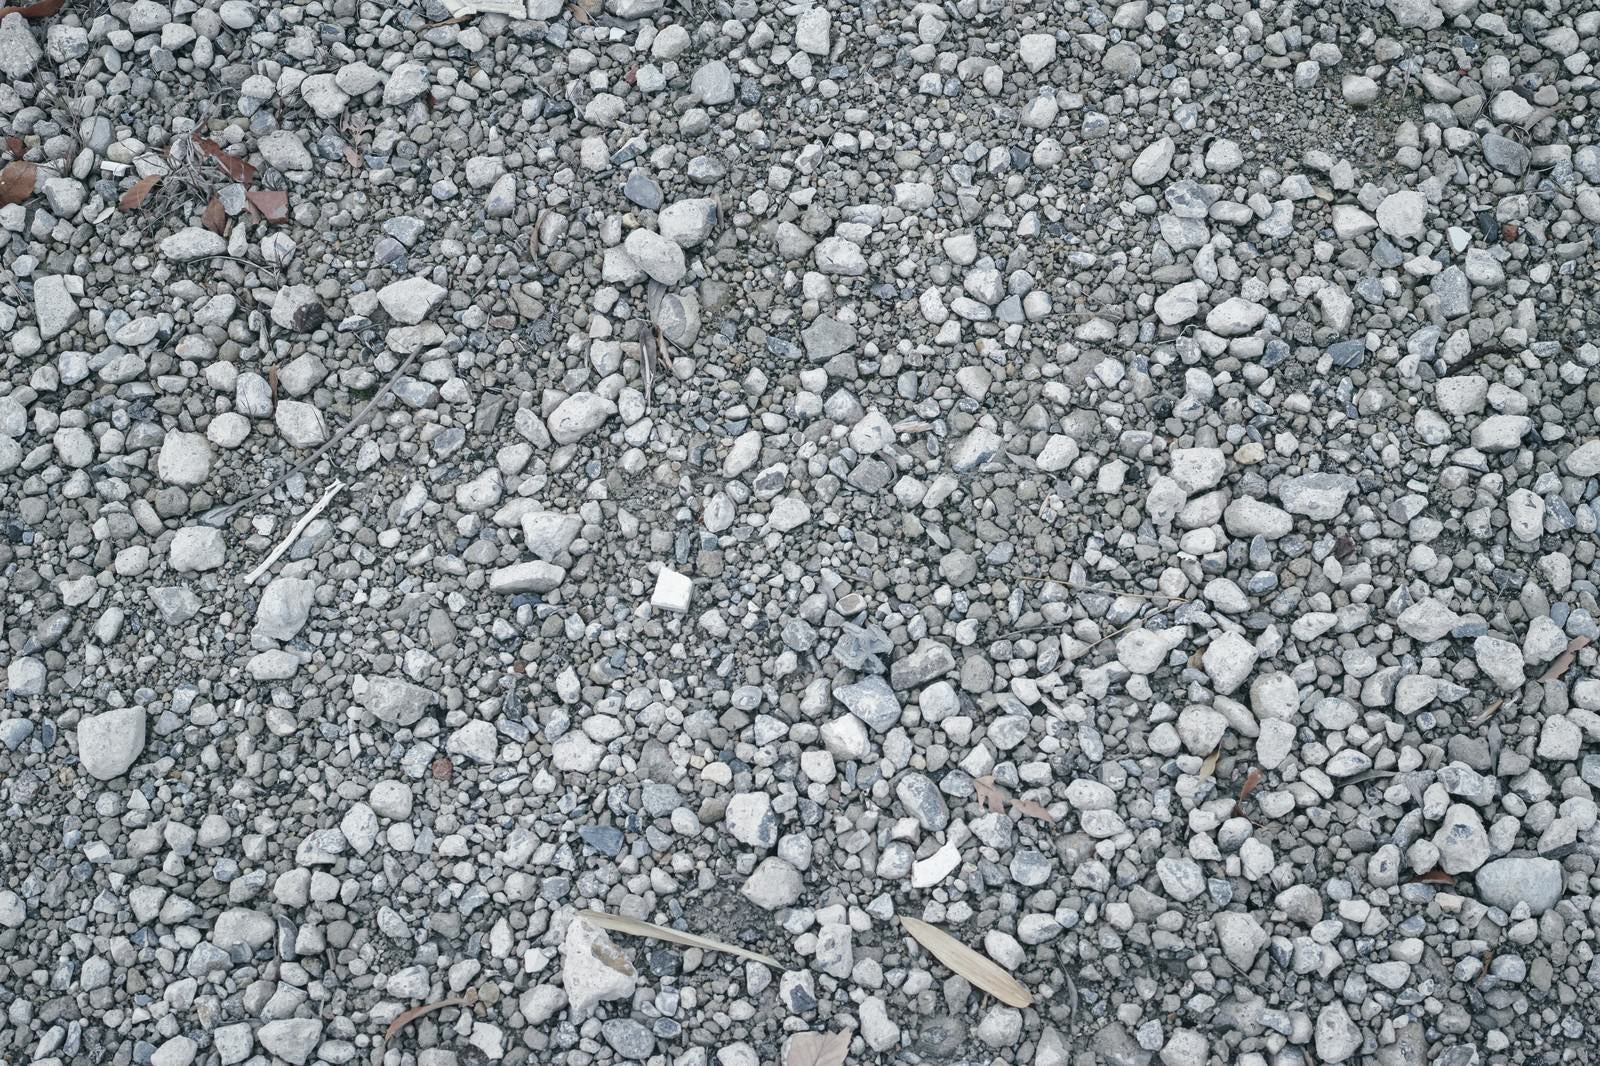 「不揃いな小石にわずかに混じる枯れ葉の残骸（テクスチャー）」の写真